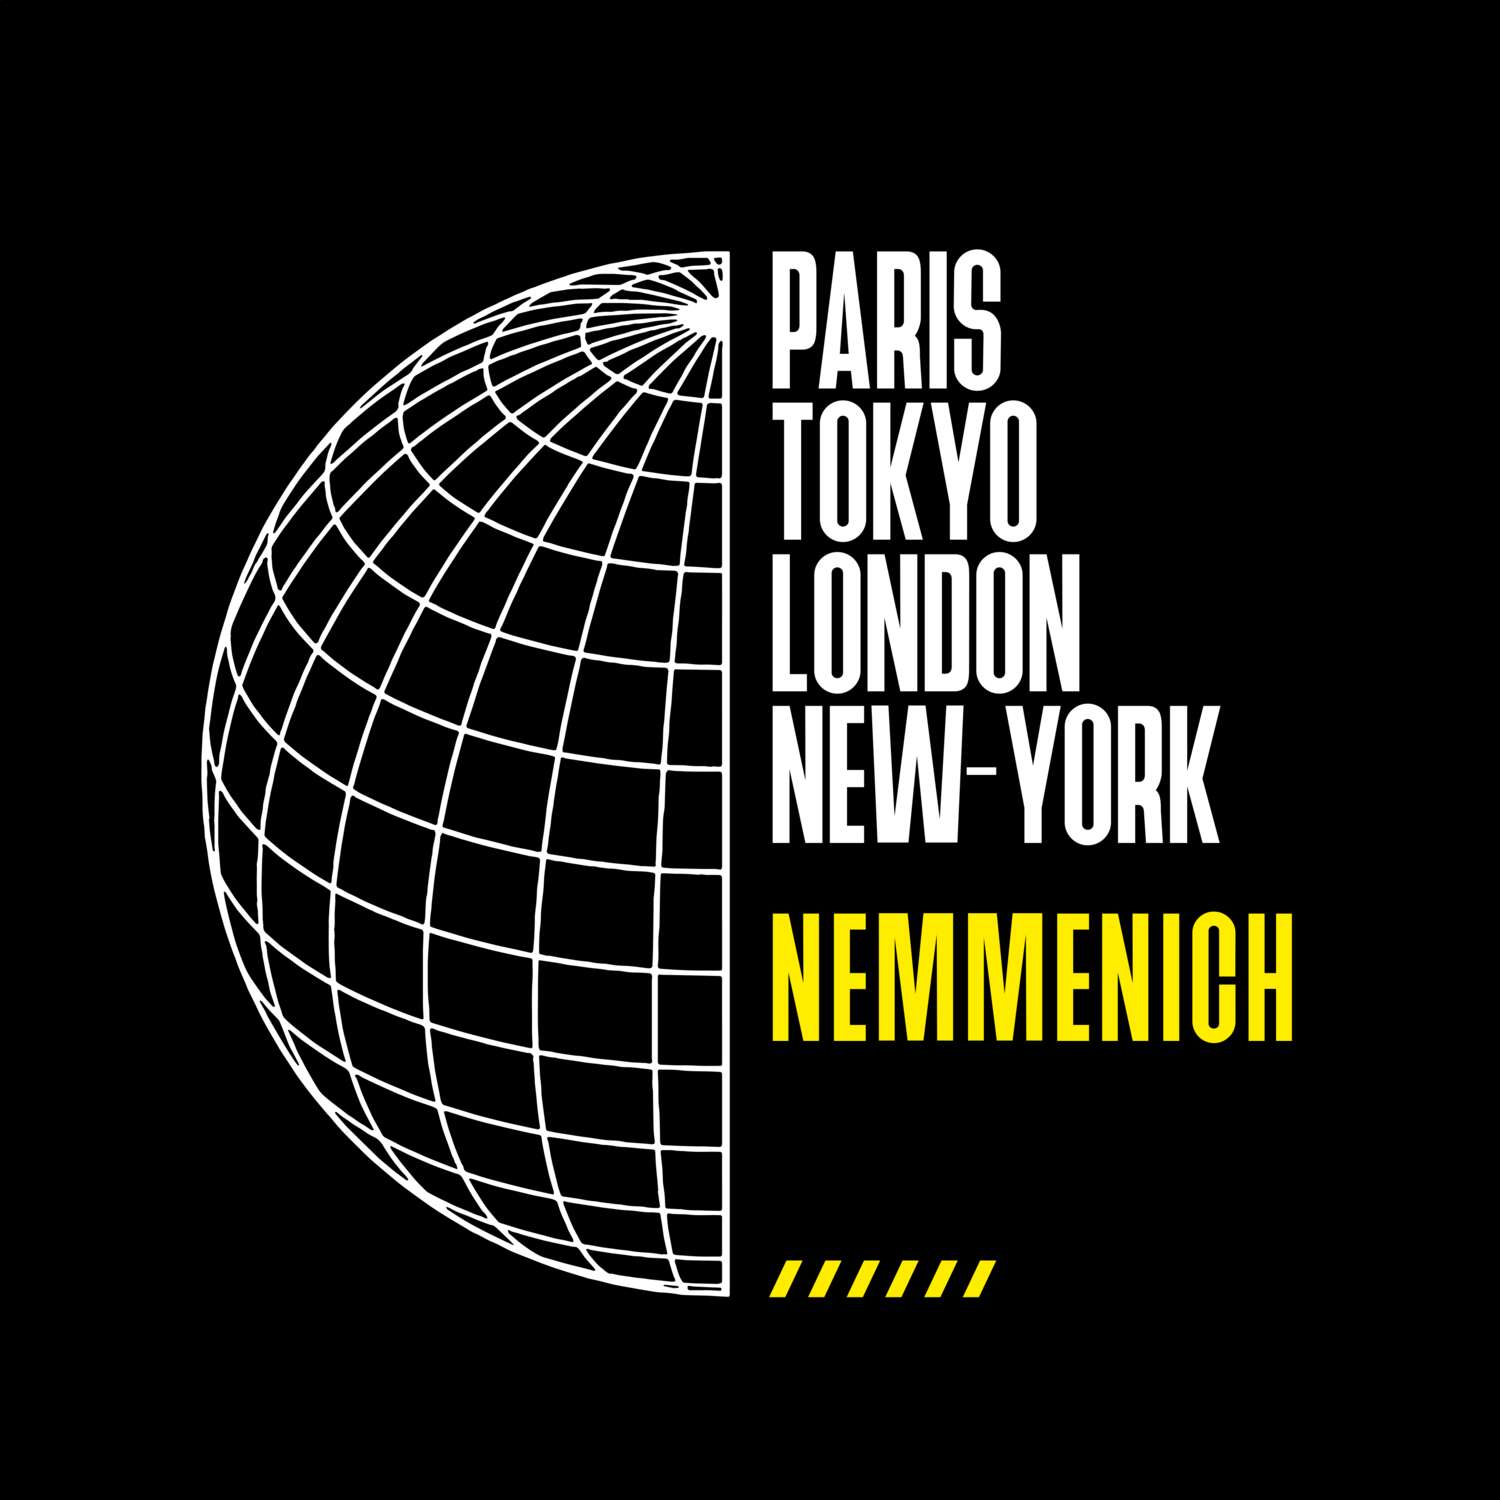 Nemmenich T-Shirt »Paris Tokyo London«